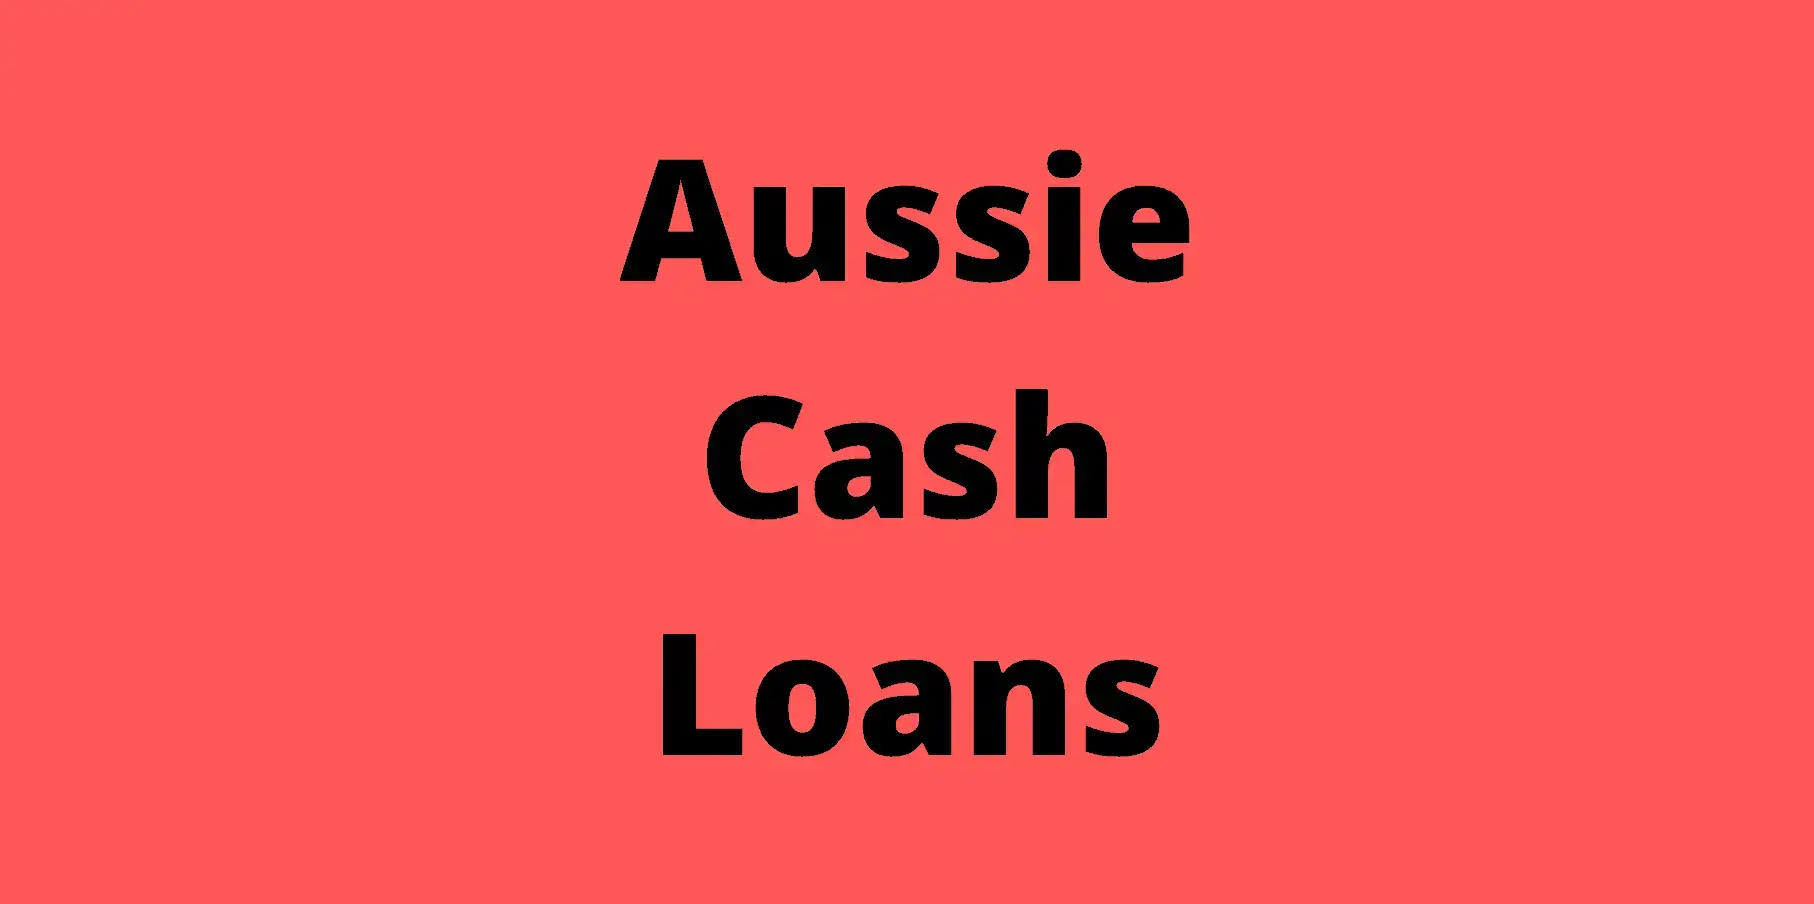 Aussie Cash Loans Australia Payday Lending